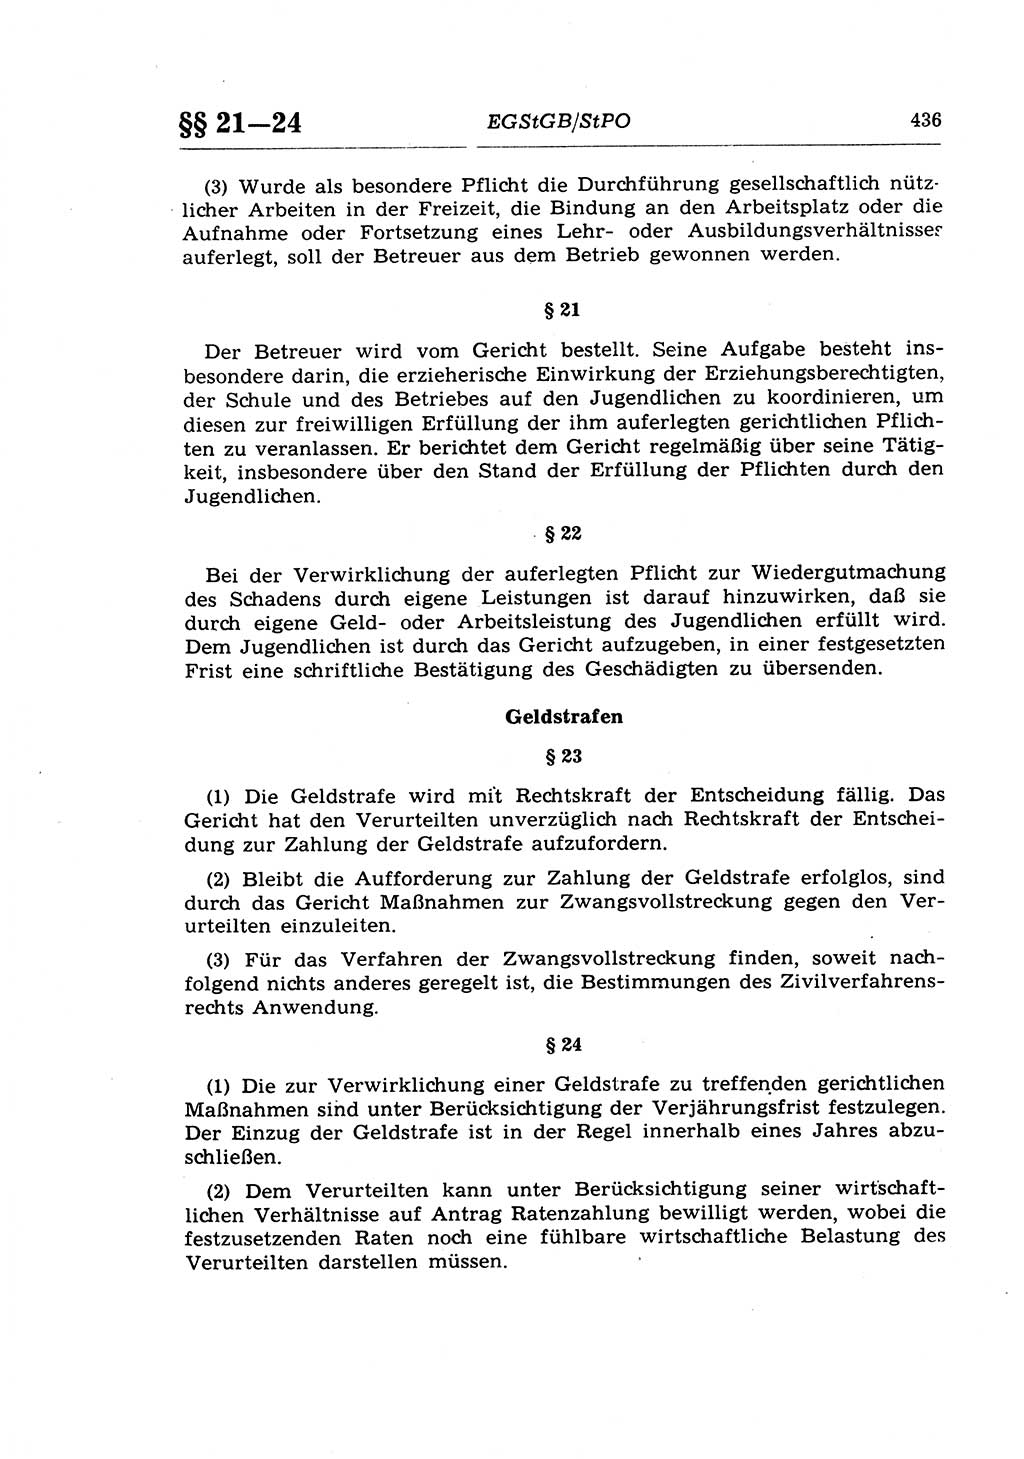 Strafprozeßrecht der DDR (Deutsche Demokratische Republik), Lehrkommentar zur Strafprozeßordnung (StPO) 1968, Seite 436 (Strafprozeßr. DDR Lehrkomm. StPO 19688, S. 436)